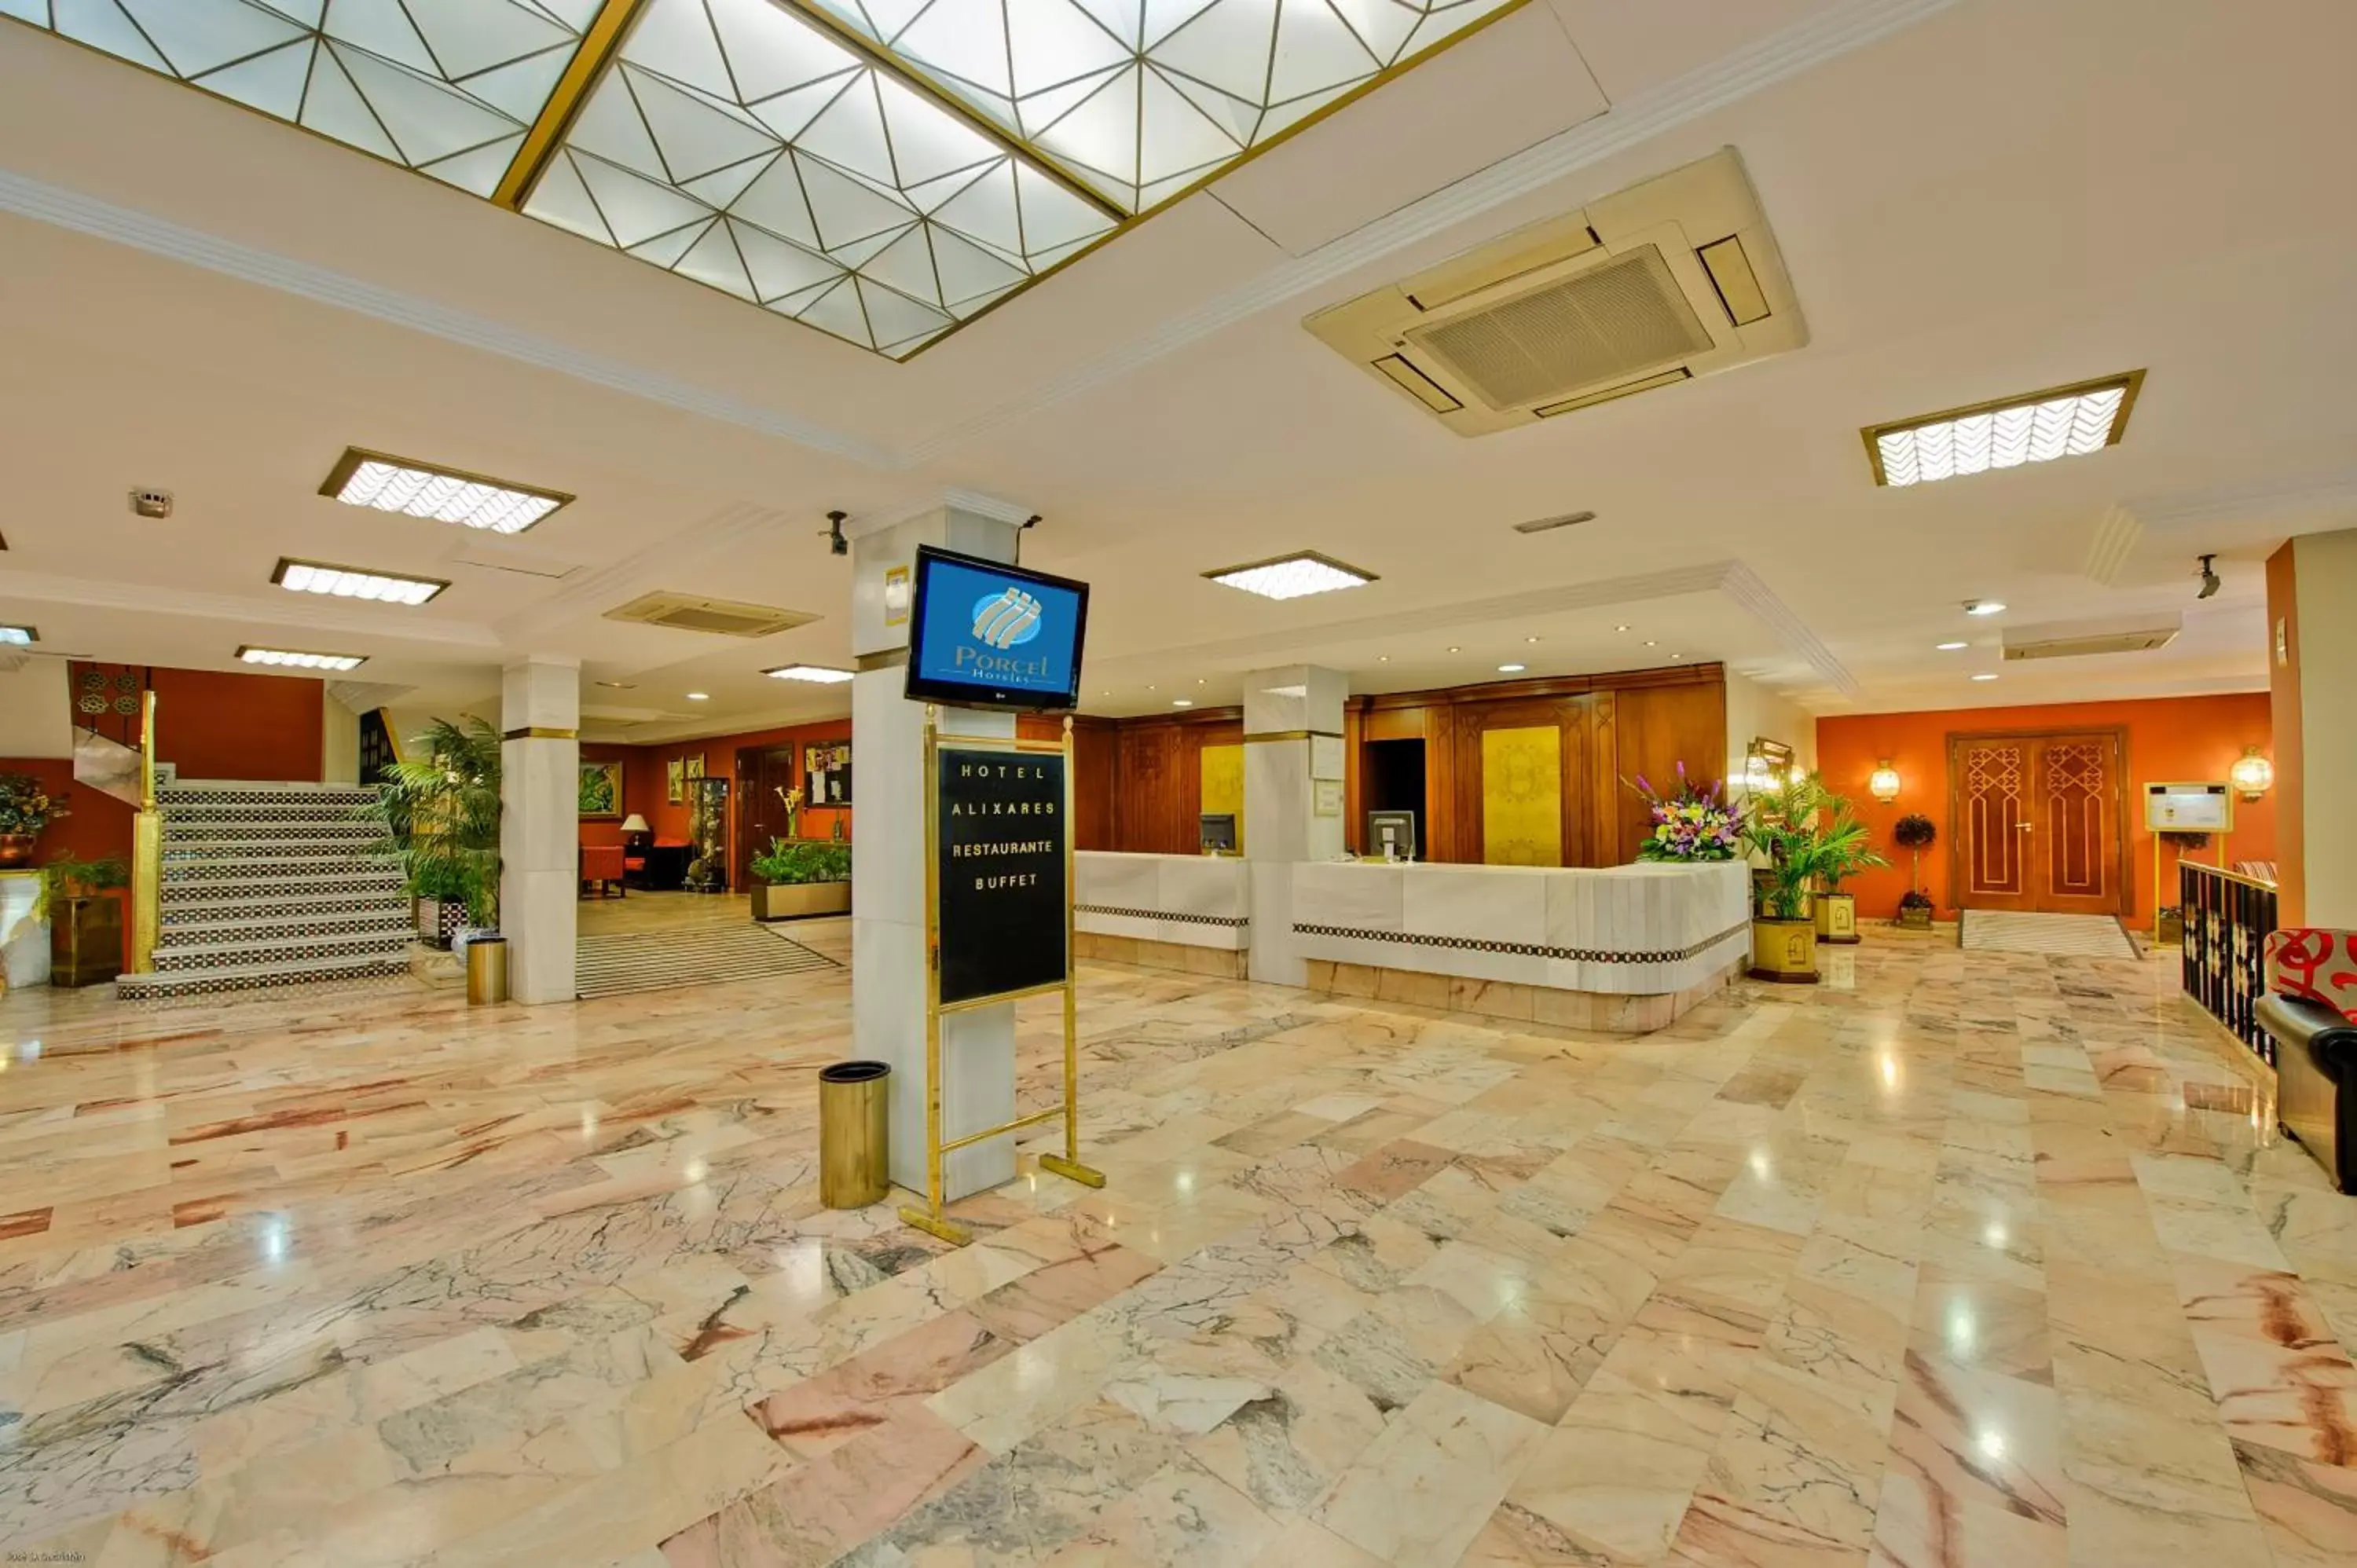 Lobby or reception in Porcel Alixares